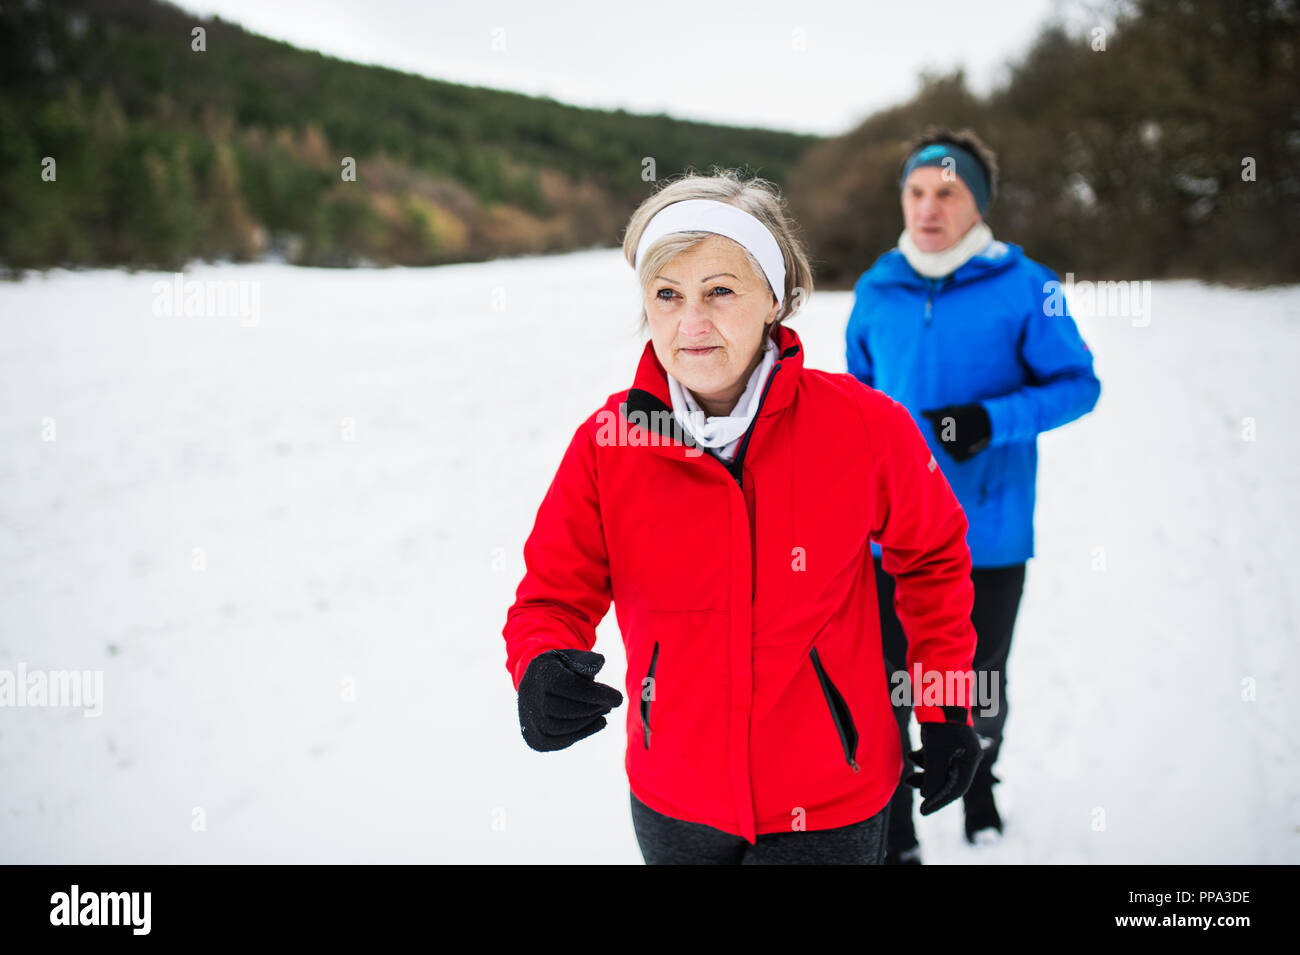 Une vue de face du couple jogging en hiver neige la nature. Banque D'Images